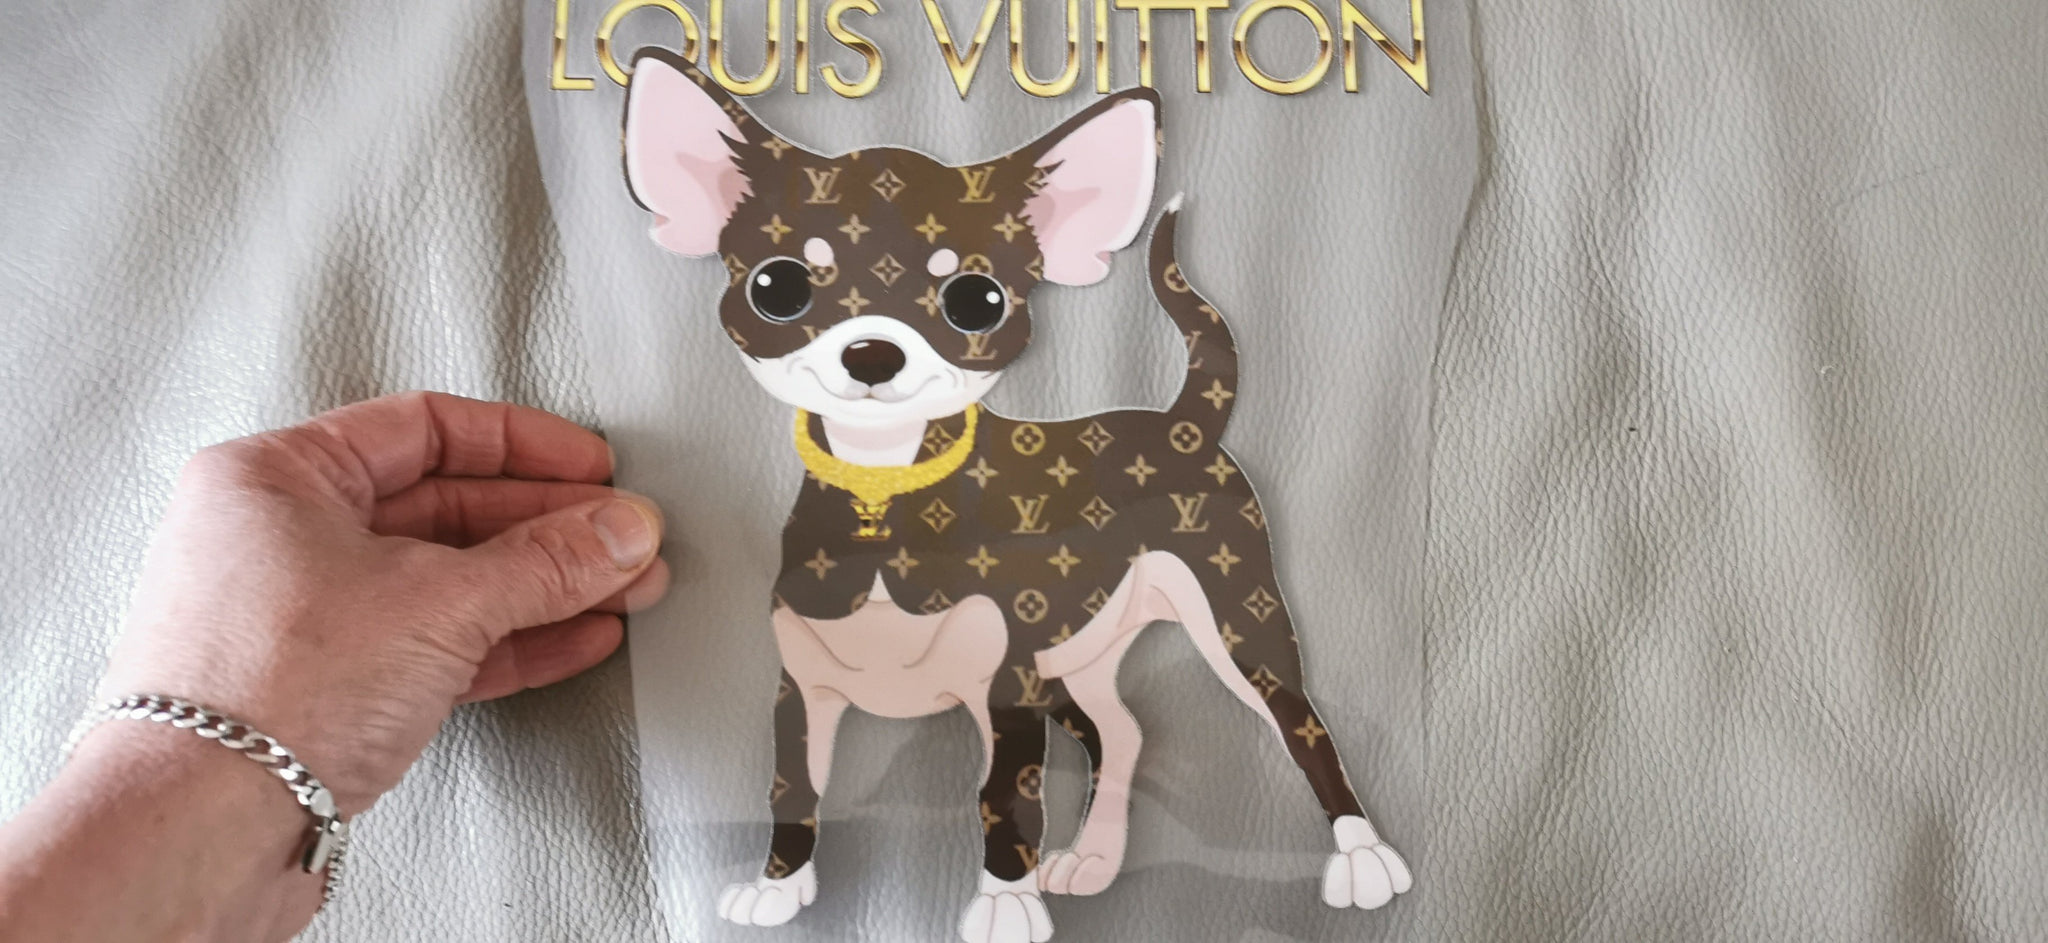 LV custom dog clothes  louis vuitton dog clothes